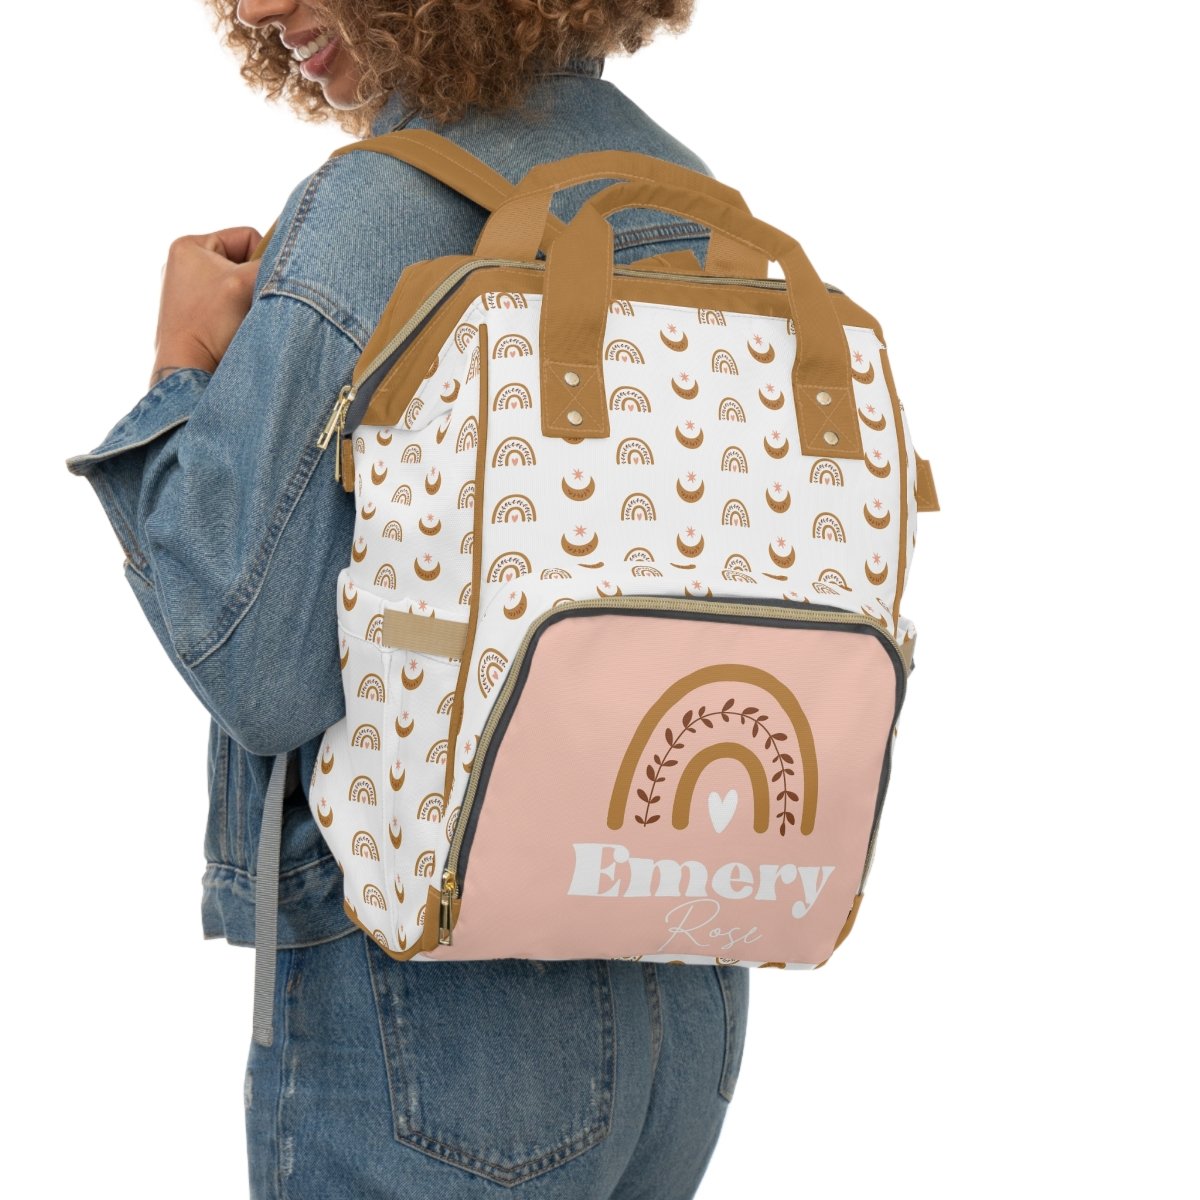 Boho Sunset Personalized Backpack Diaper Bag - Boho Sunset, gender_girl, text